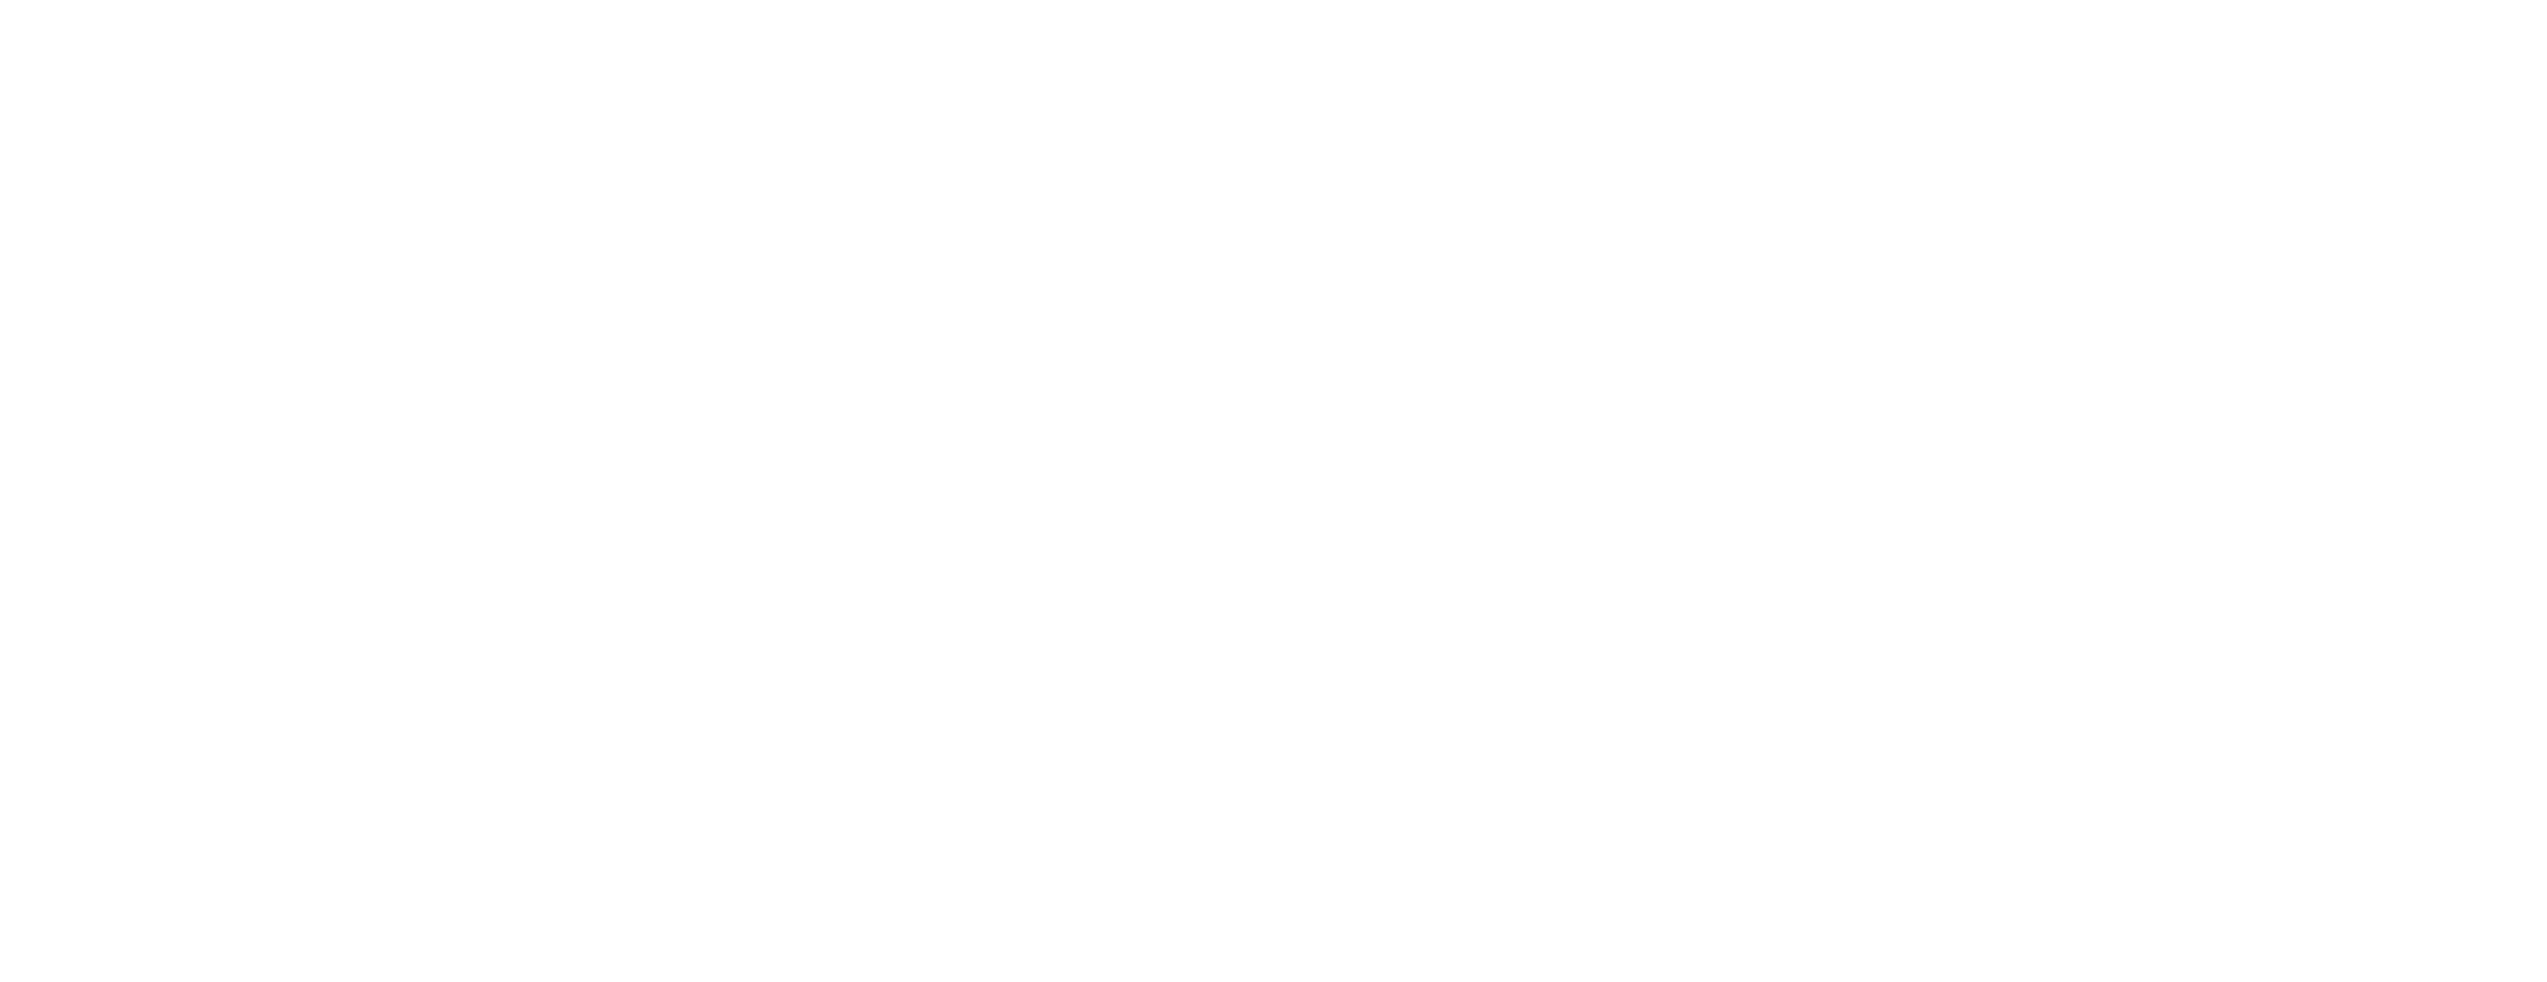 伊江島ファミリーサイクリング 50km